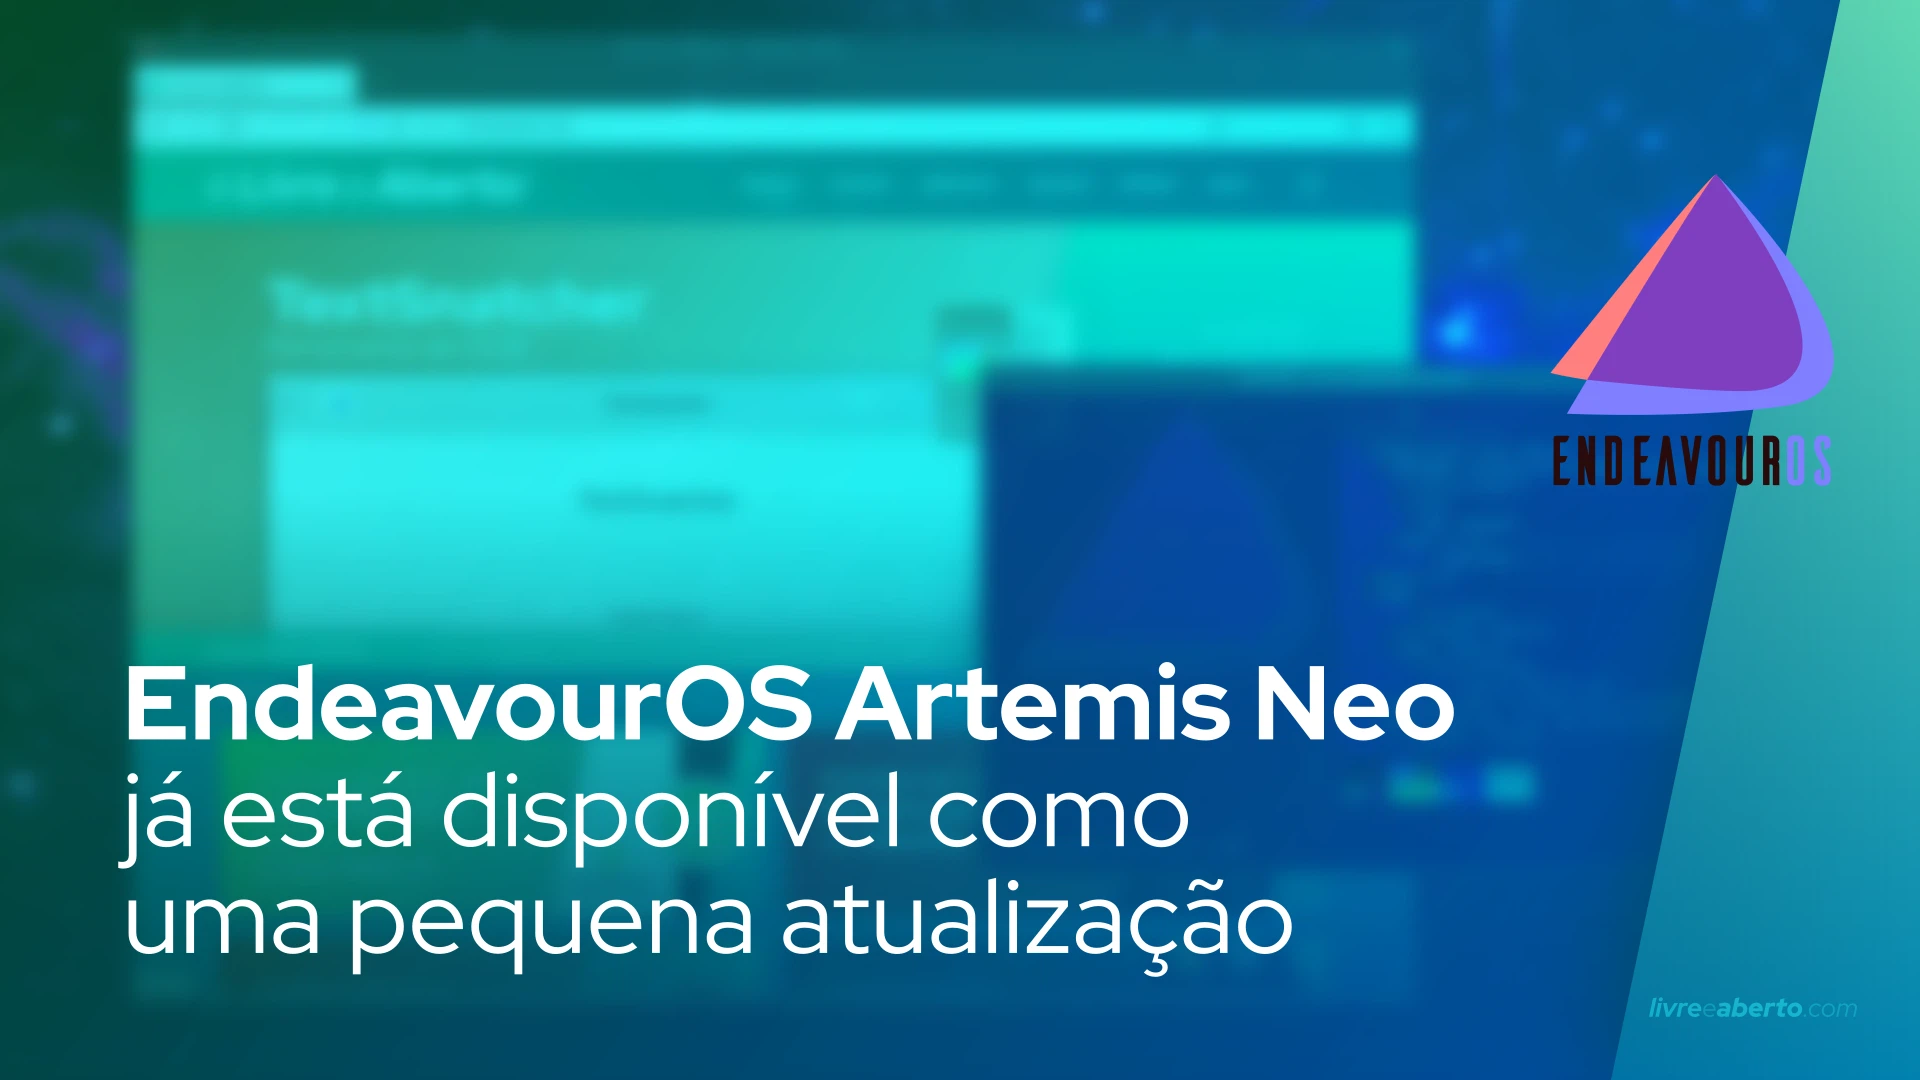 O EndeavourOS Artemis Neo, baseado no Arch Linux, já está disponível como uma pequena atualização